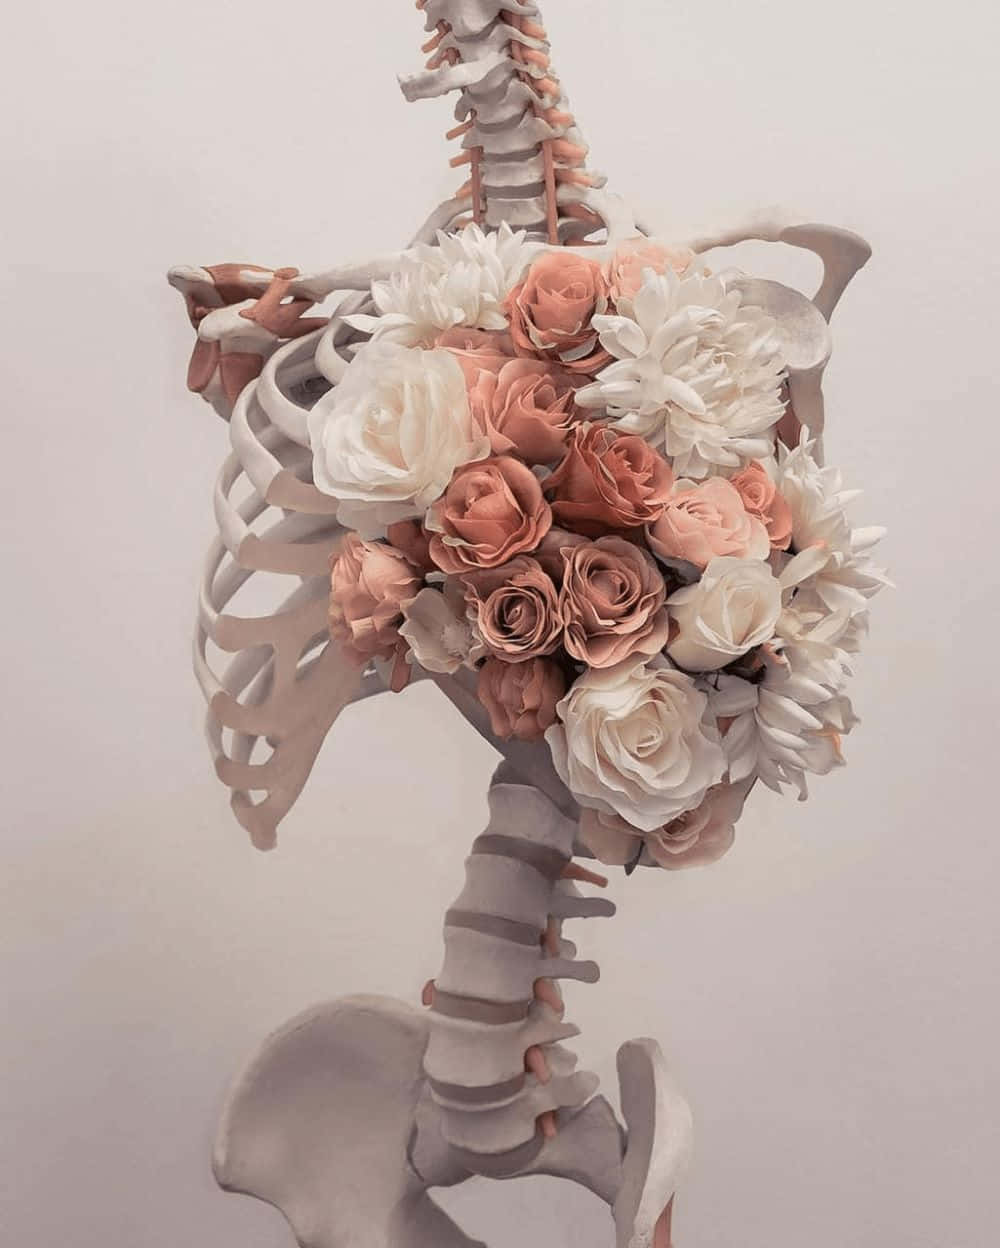 Floral Skeleton Artwork Wallpaper